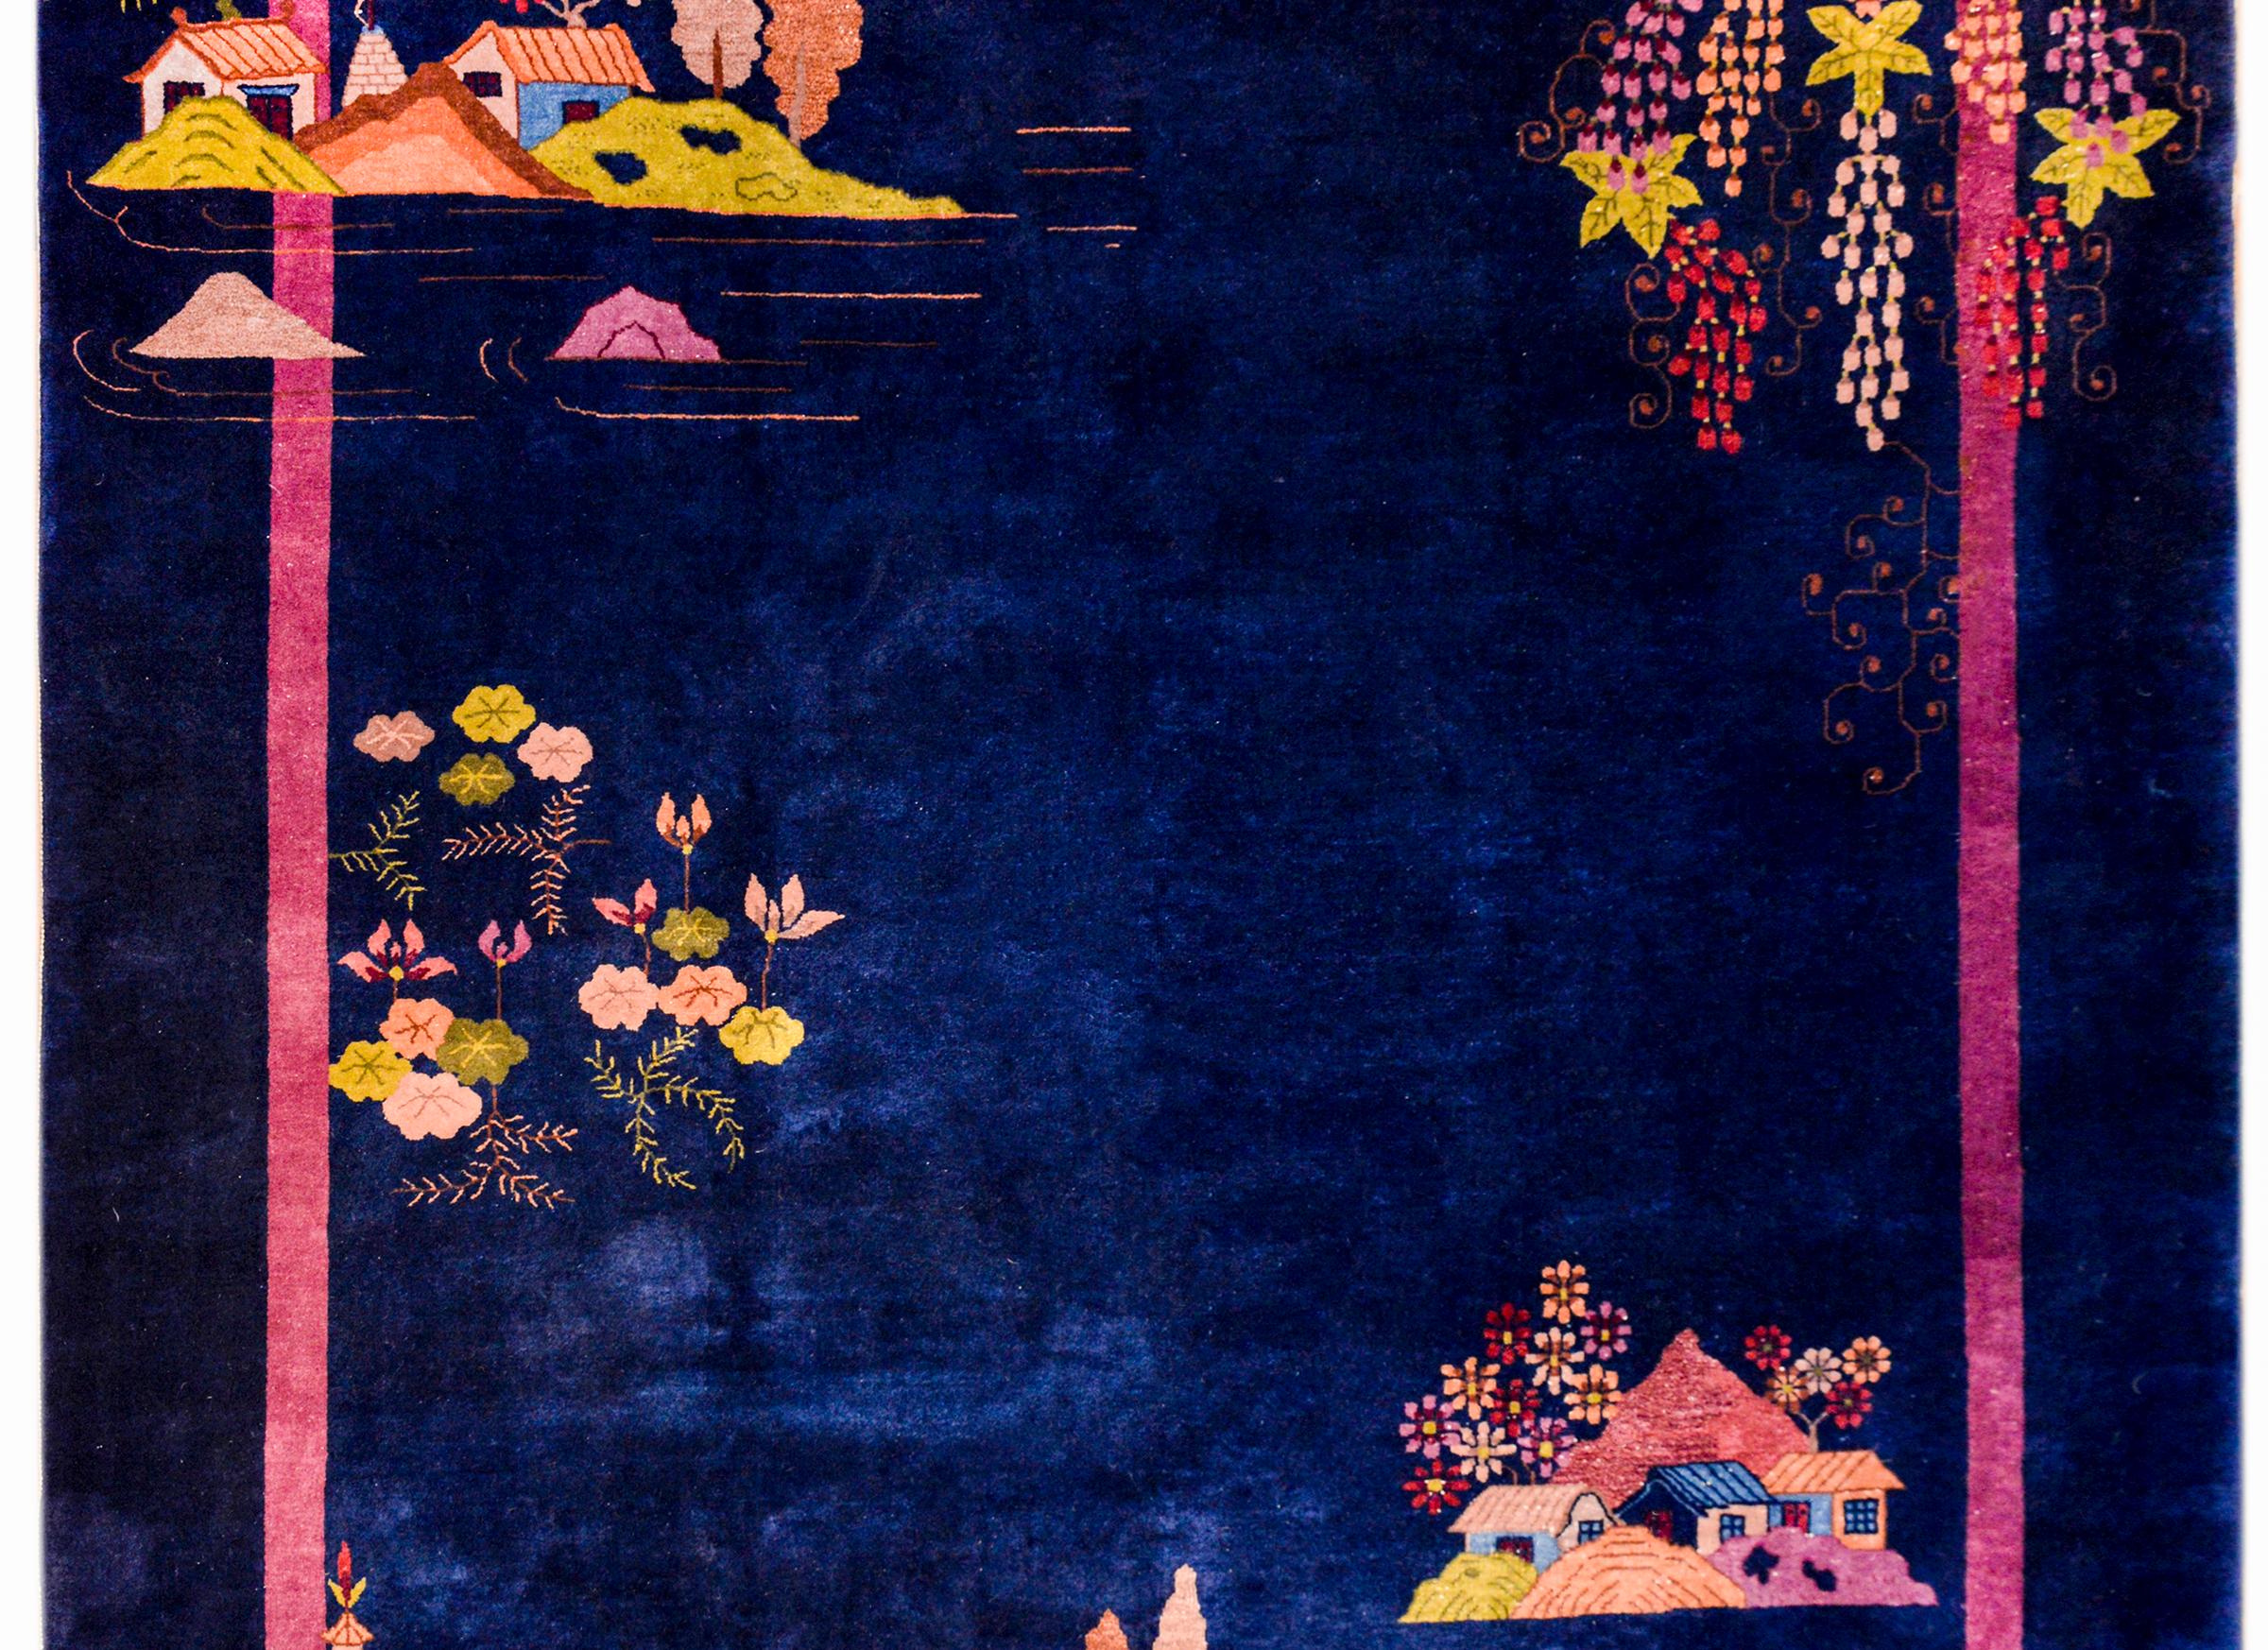 Ein wunderschöner chinesischer Art-Déco-Teppich aus dem frühen 20. Jahrhundert mit einem unglaublich dunklen indigoblauen Hintergrund und einer dünnen, hellrosa gestreiften Bordüre. Drei Hügel mit mehrfarbigen Dorfszenen sind über die gesamte Fläche